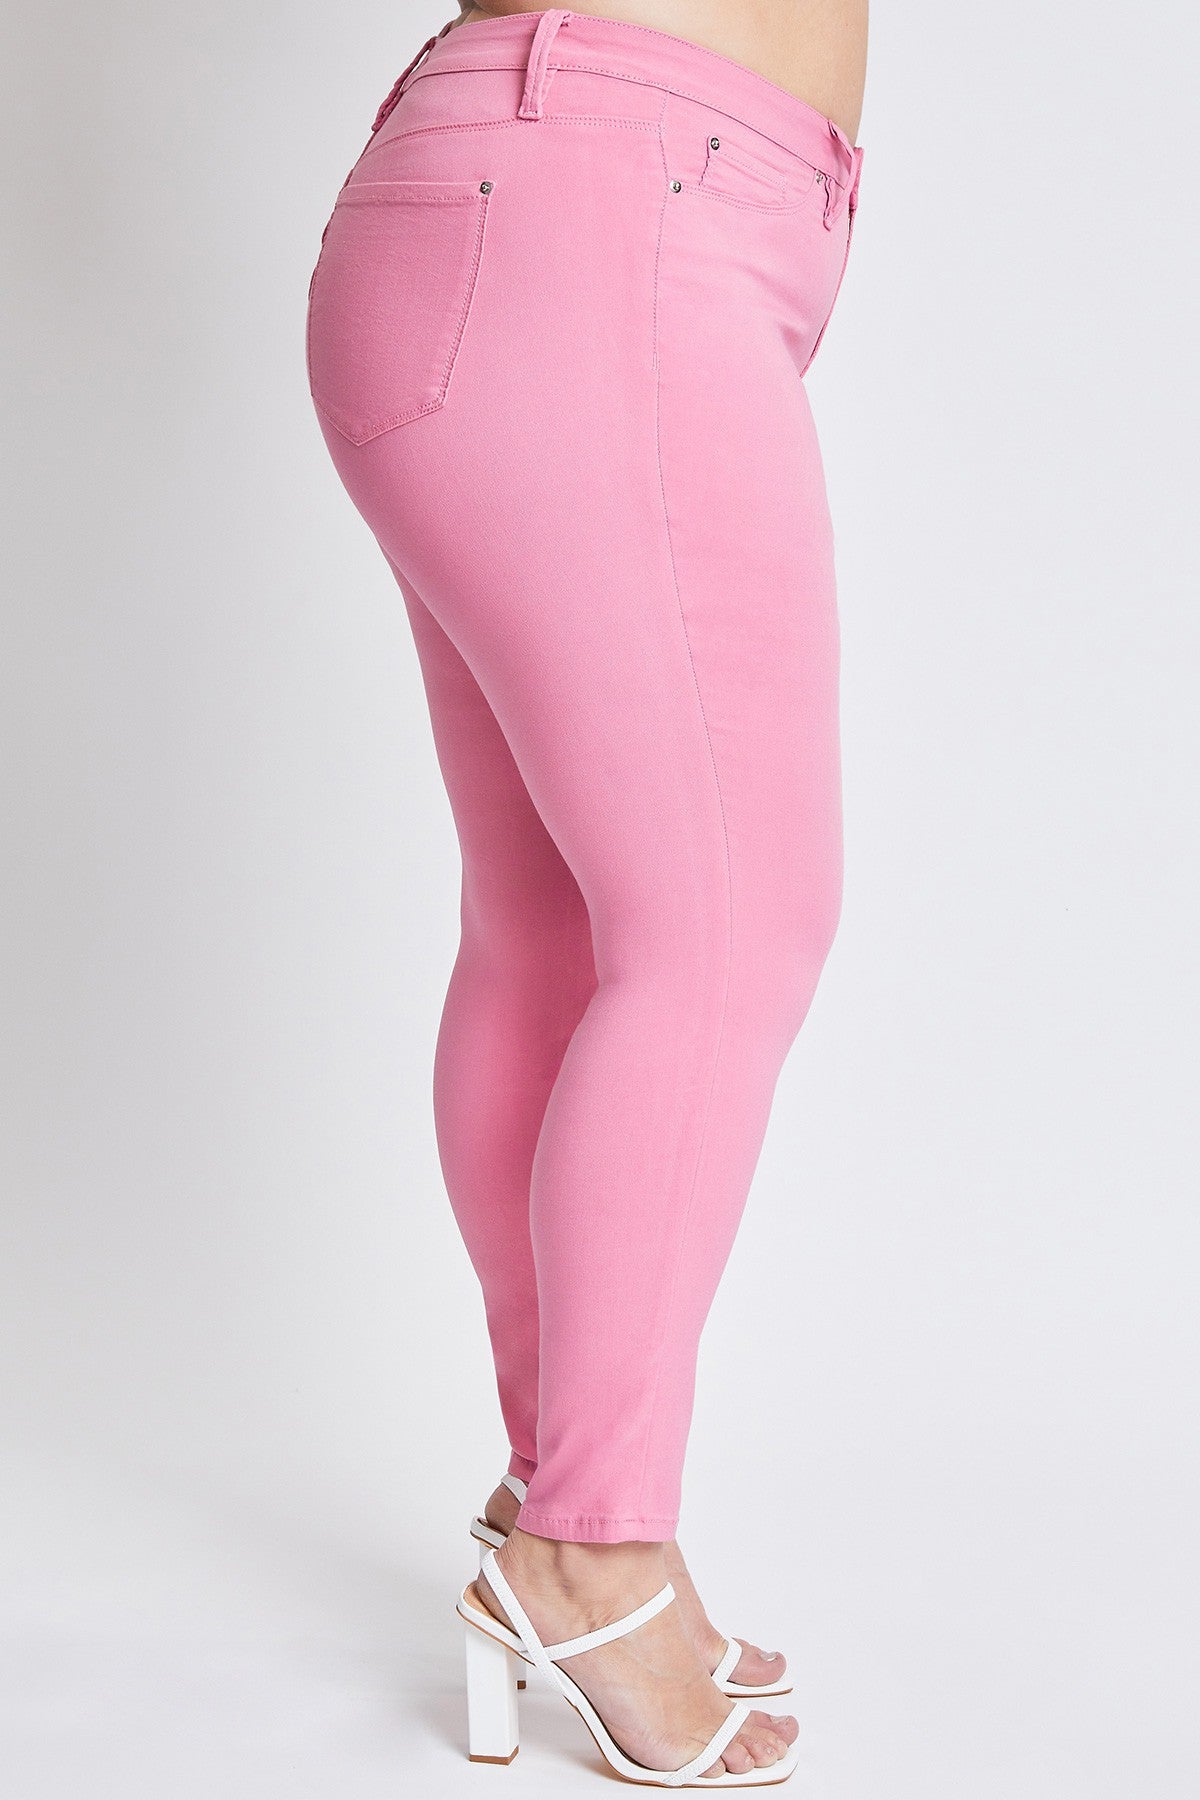 Curvy Flamingo YMI Hyperstretch Jeans